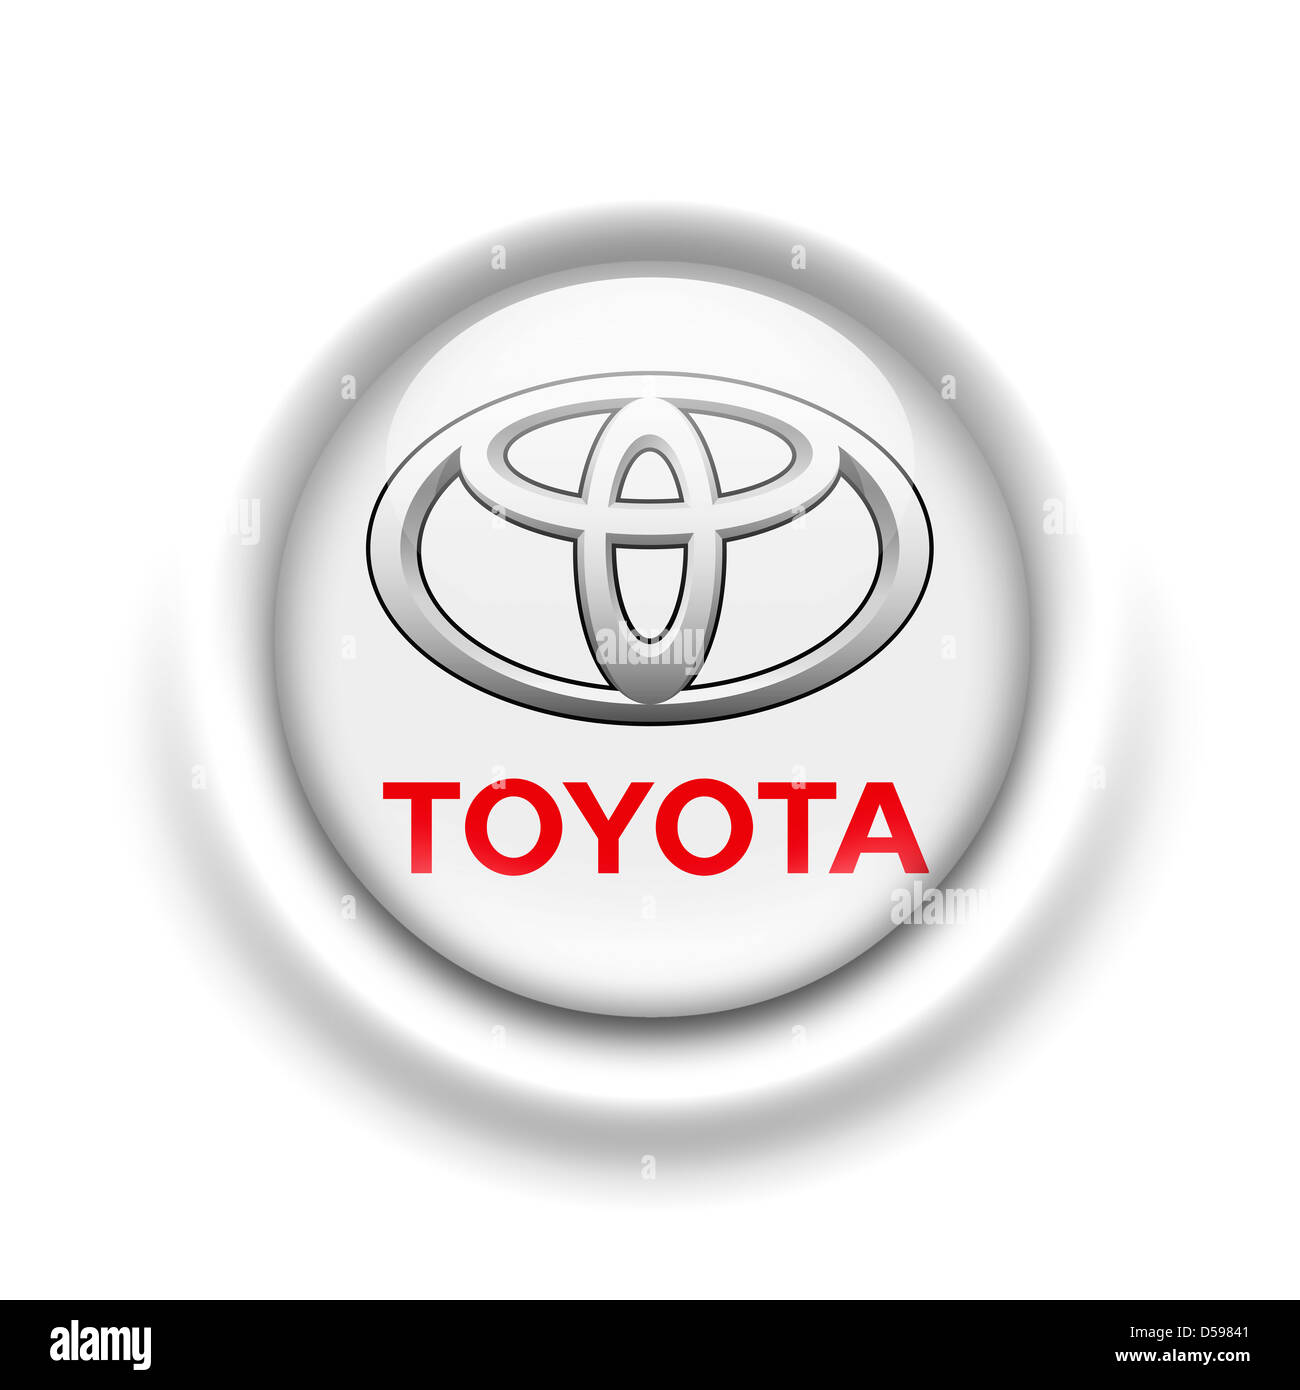 Toyota logo symbol icon flag Stock Photo